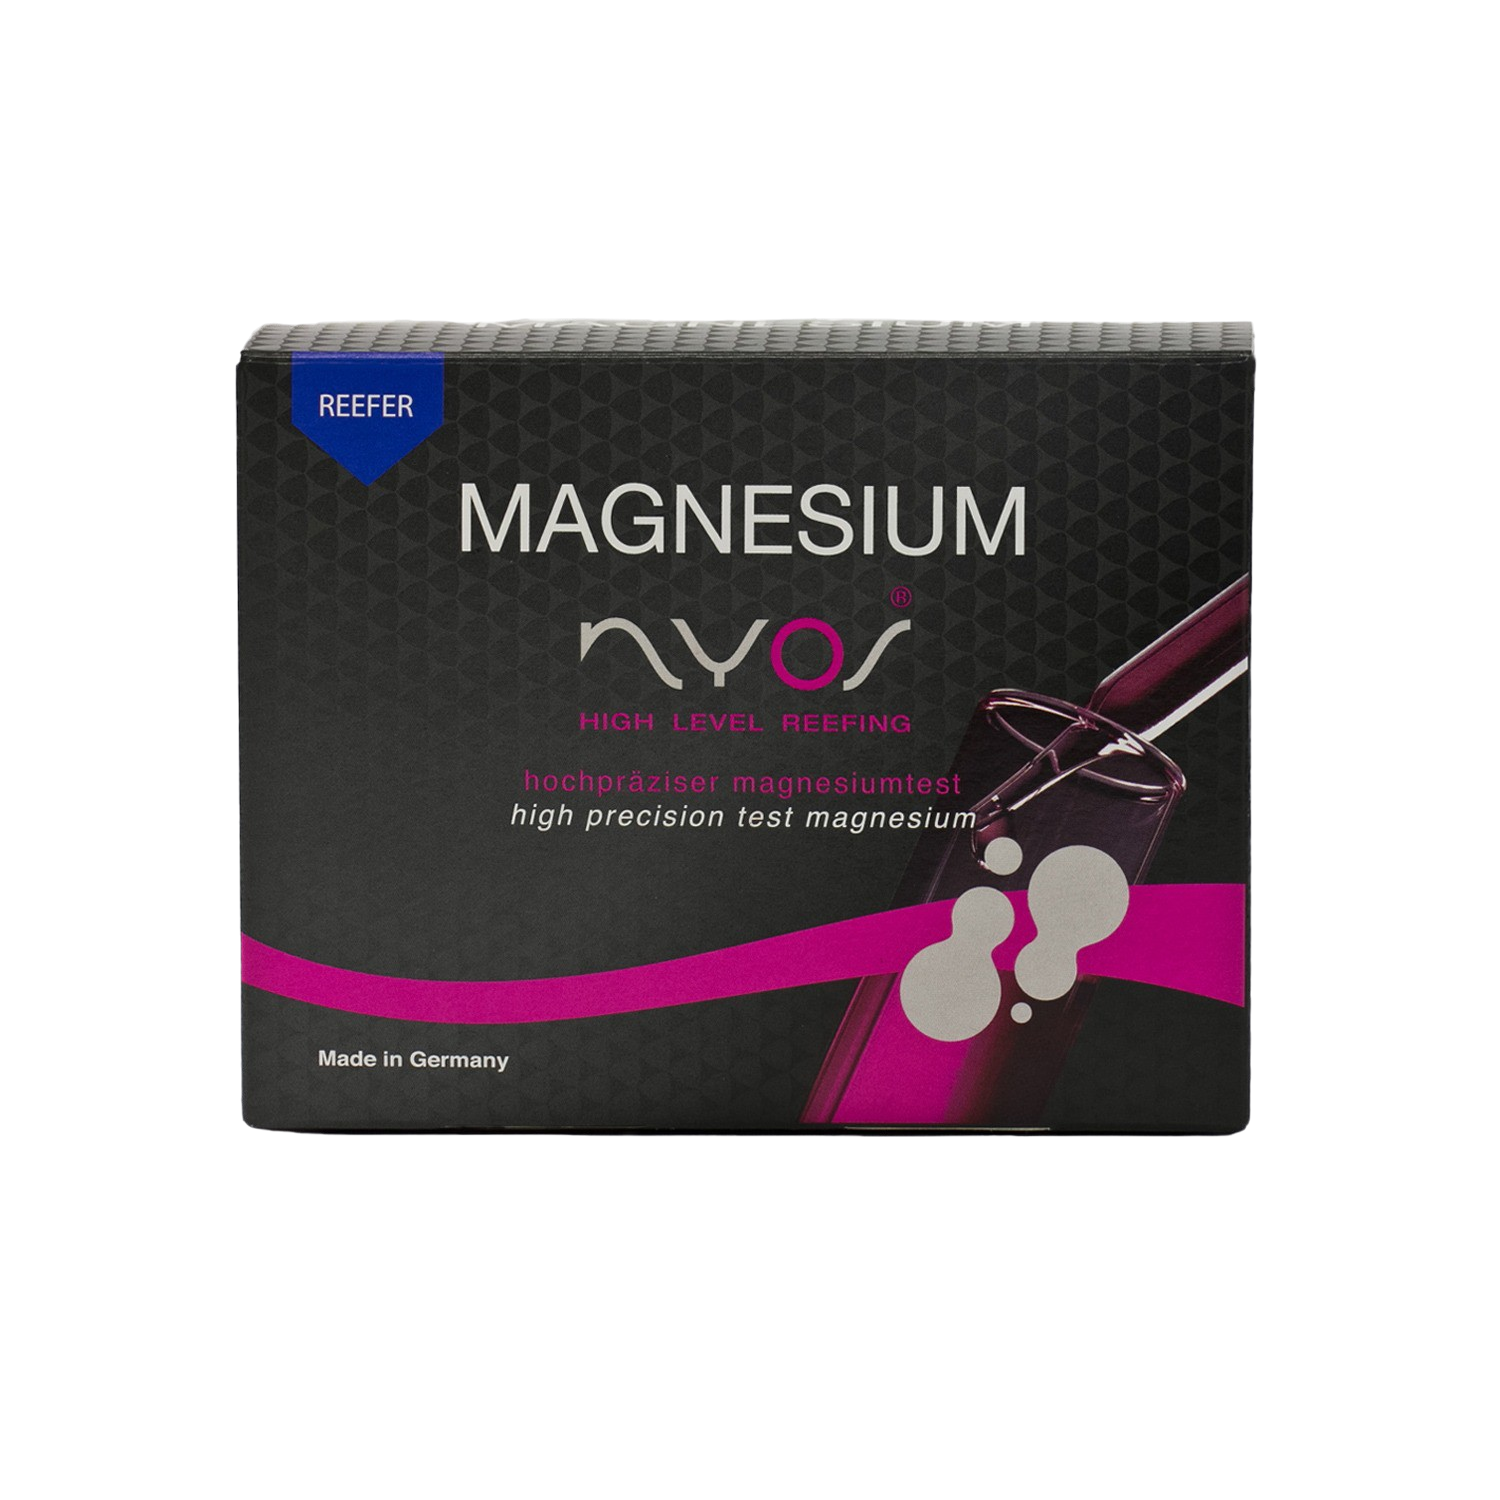 Nyos Magnesium Reefer Magnesium Test (50 St.)